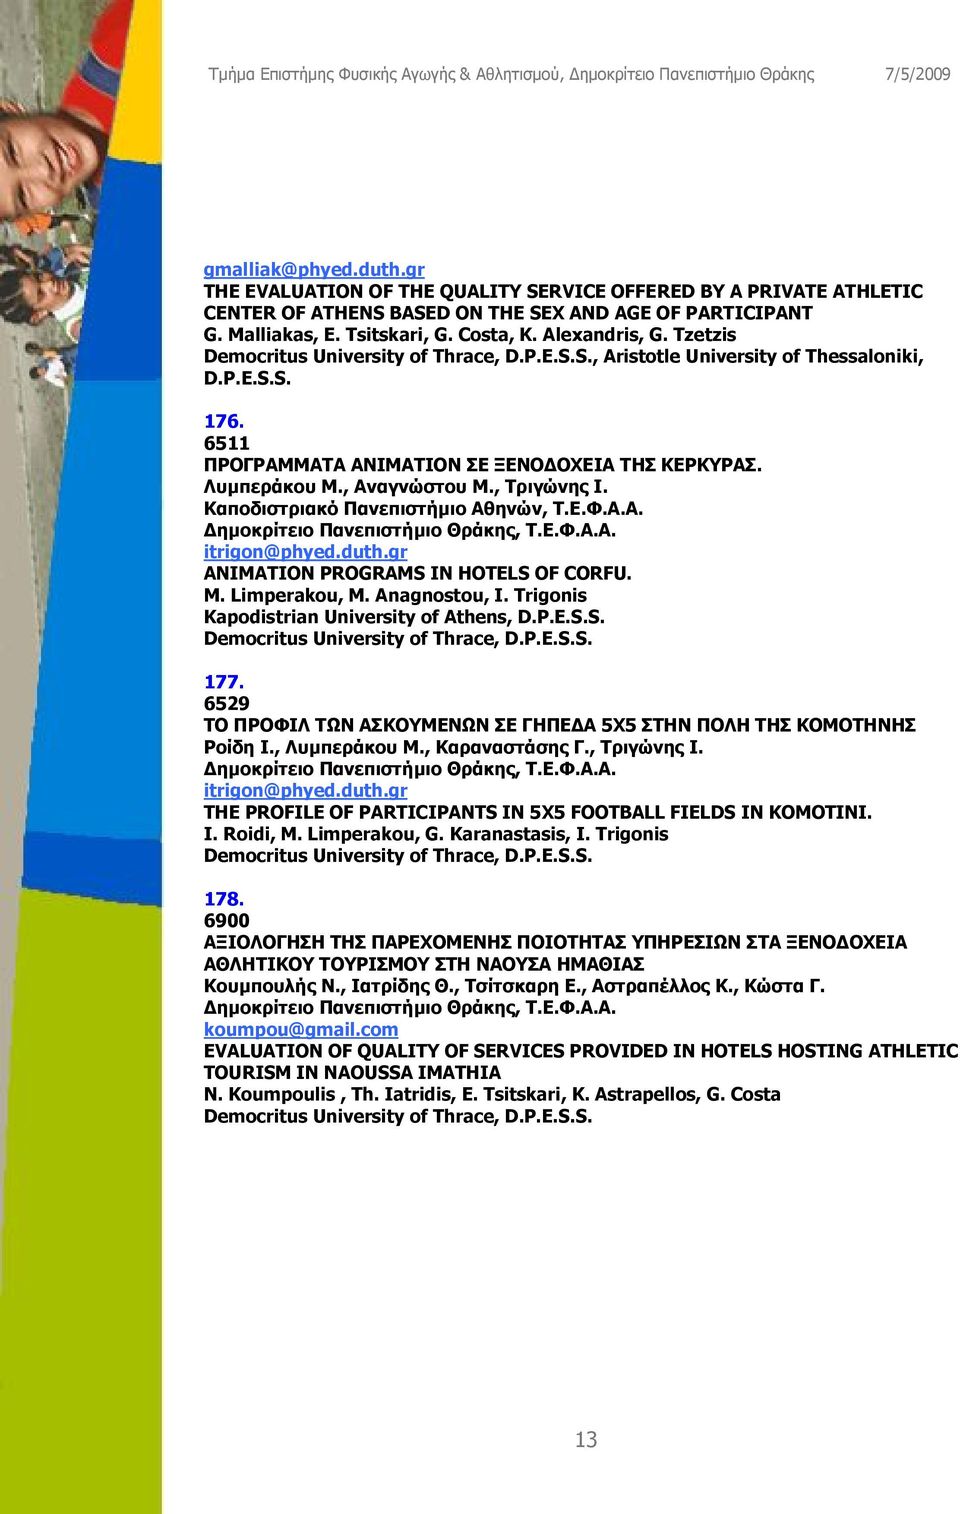 Καποδιστριακό Πανεπιστήμιο Αθηνών, Τ.Ε.Φ.Α.Α. itrigon@phyed.duth.gr ANIMATION PROGRAMS IN HOTELS OF CORFU. M. Limperakou, M. Anagnostou, I. Trigonis Kapodistrian University of Athens, D.P.E.S.S. 177.